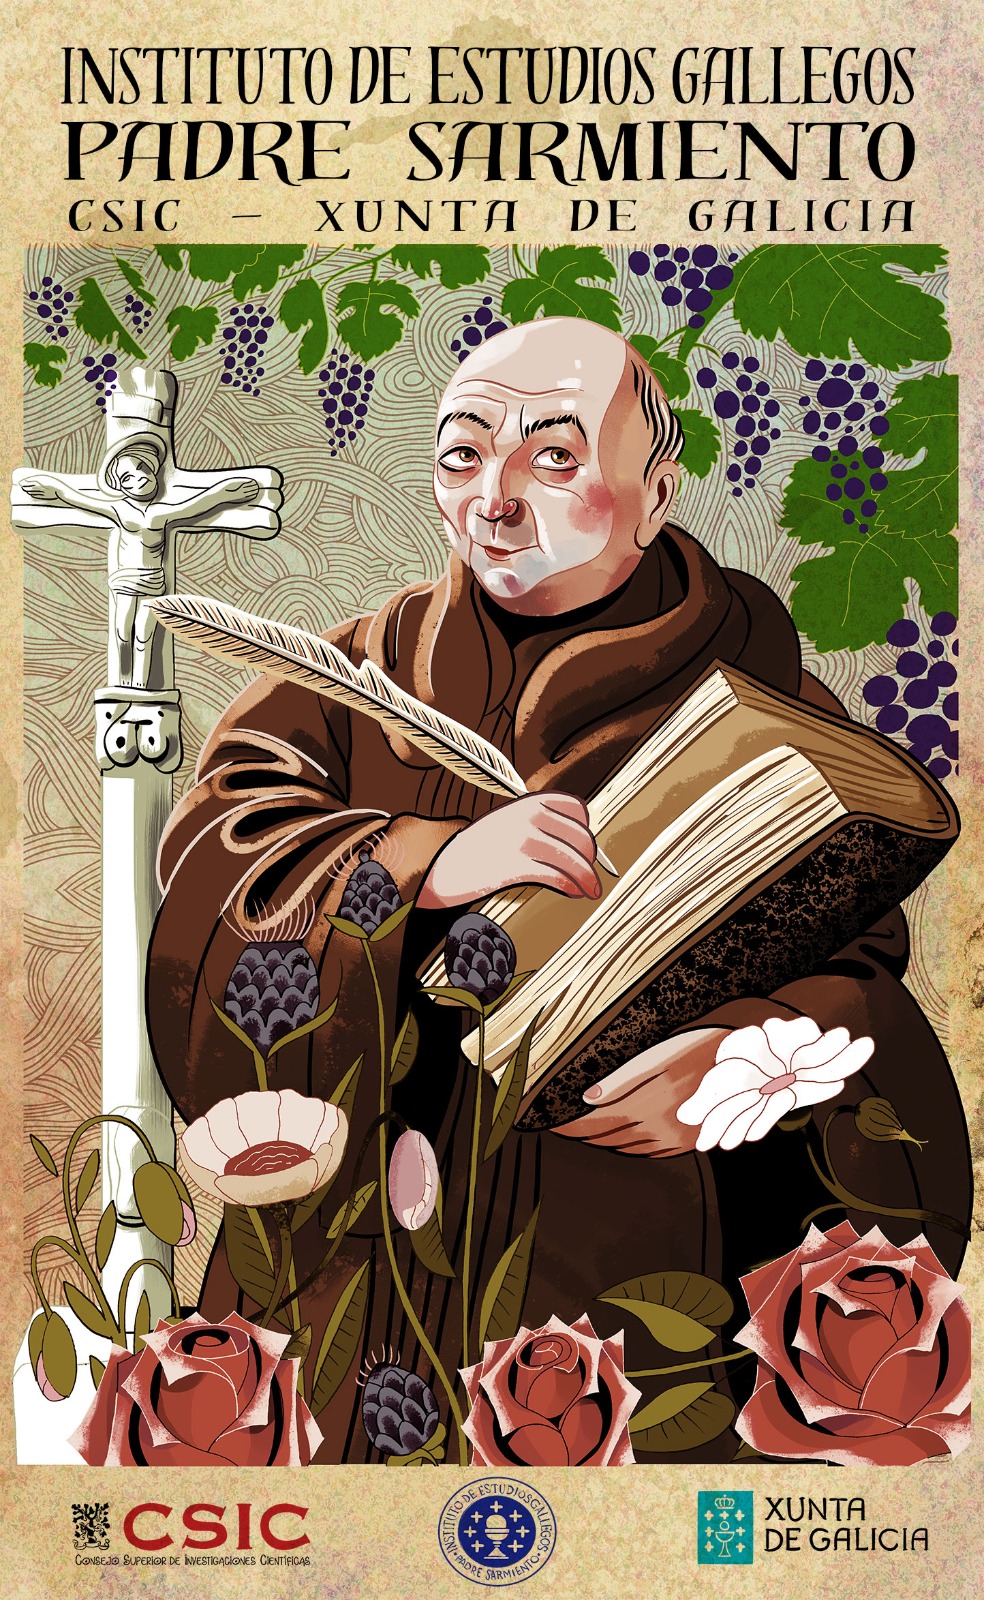 Ilustración a retratar o Padre Sarmiento. Fonte: IEGPS